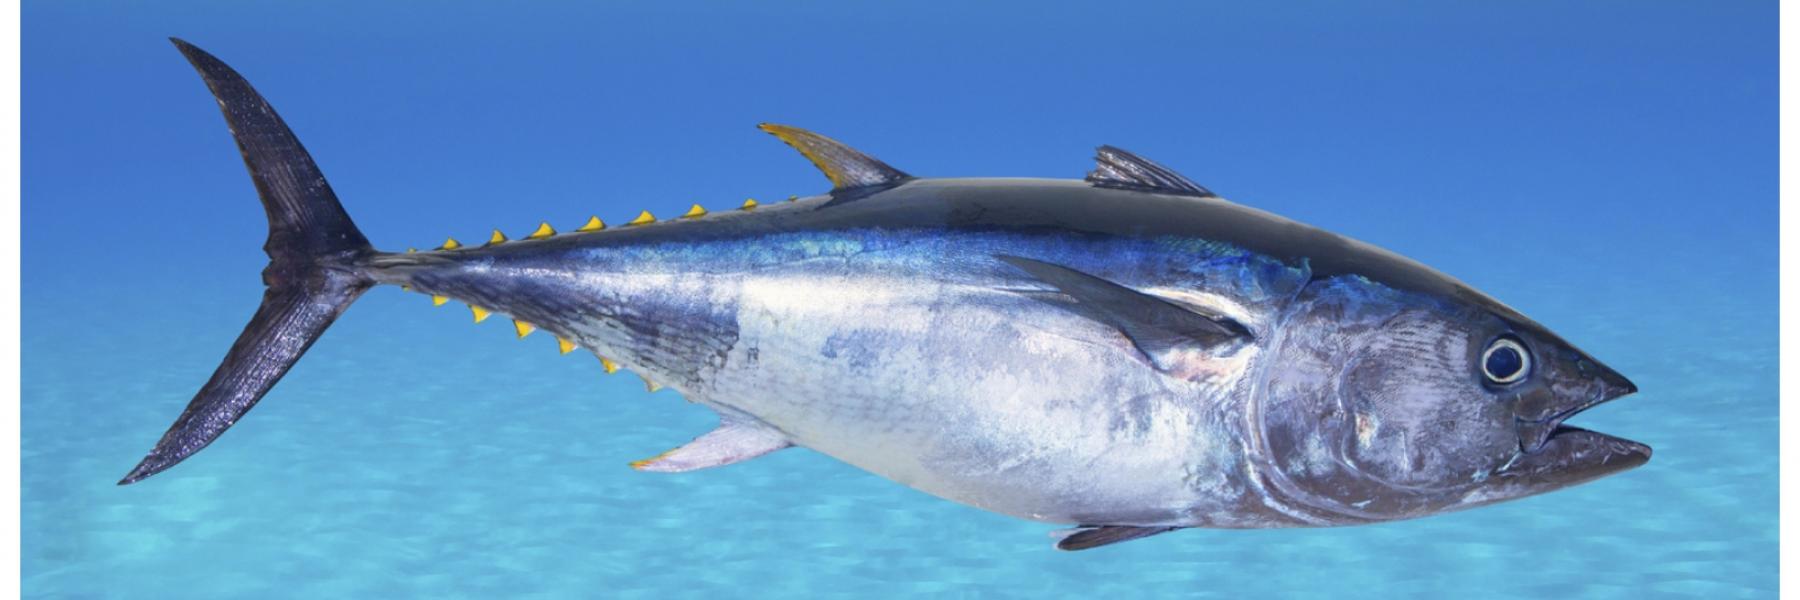 سمك التونة قد يمنح البشرة بعض الحماية من حروق الشمس، نظرًا لكونه من مضادات الأكسدة لكنه بالطبع لا يغني عن استخدام واقي الشمس